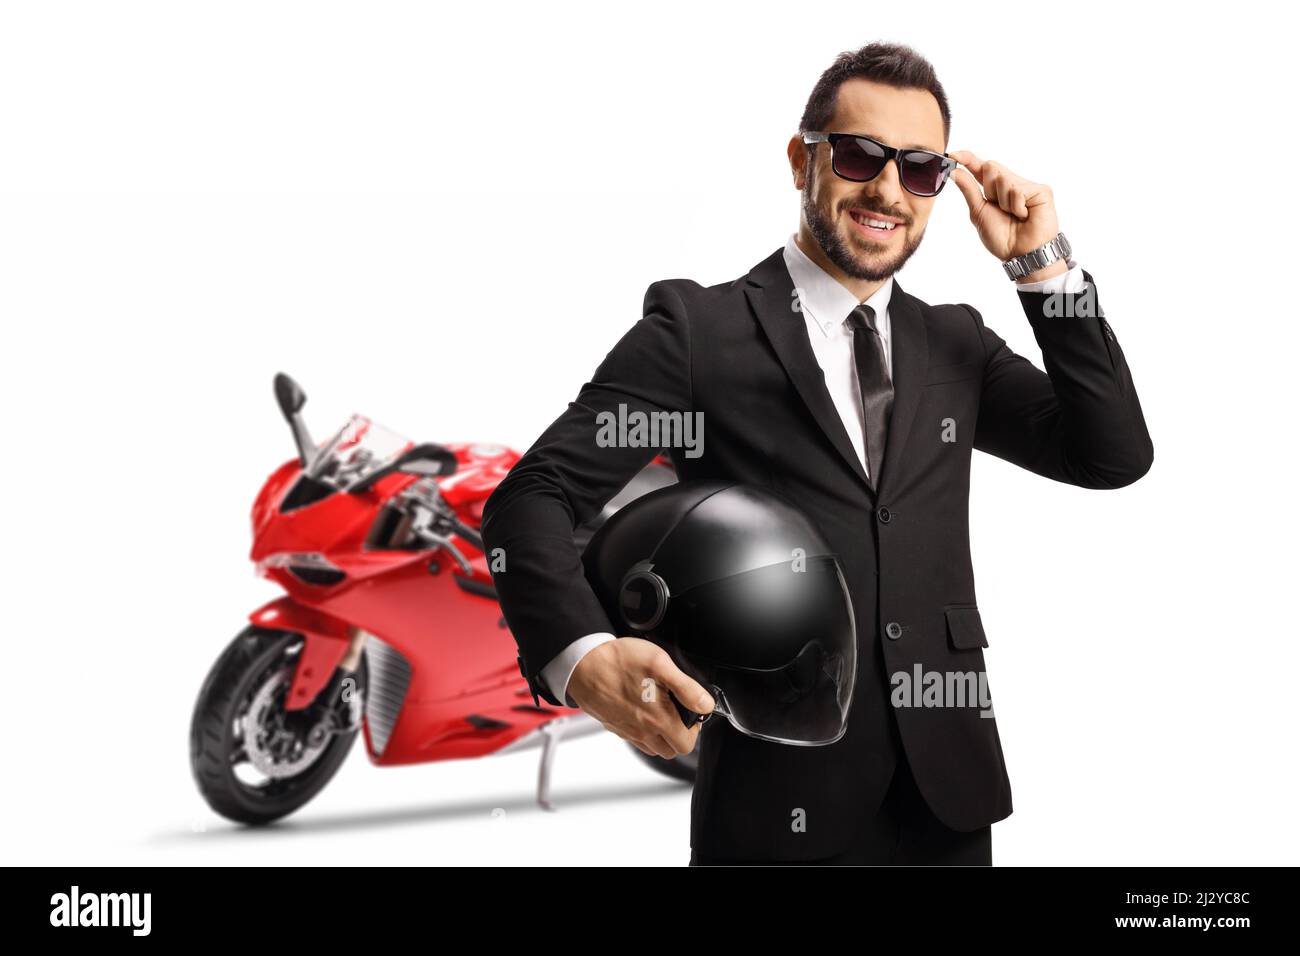 Uomo d'affari con una moto da corsa rossa che tiene un casco e indossa occhiali da sole isolati su sfondo bianco Foto Stock